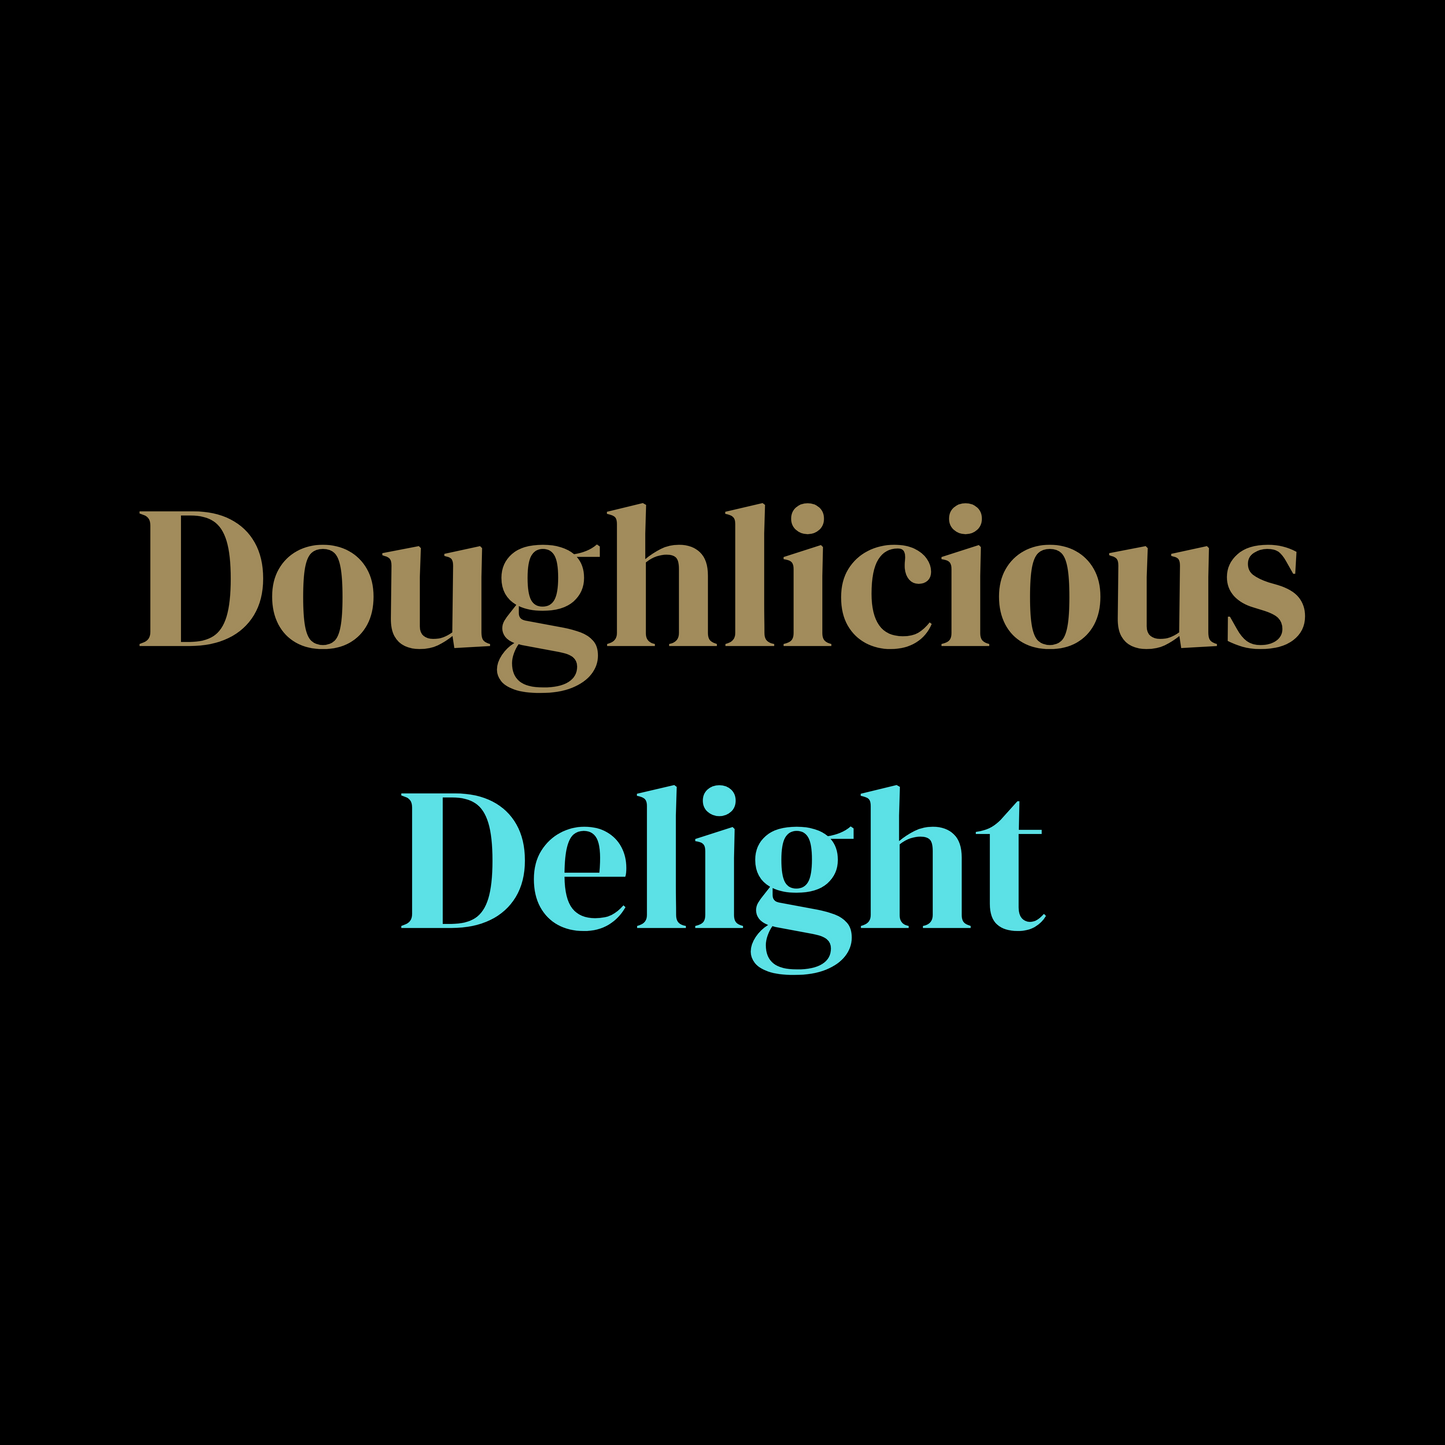 DOUGHLICIOUS DELIGHT - The Melt House